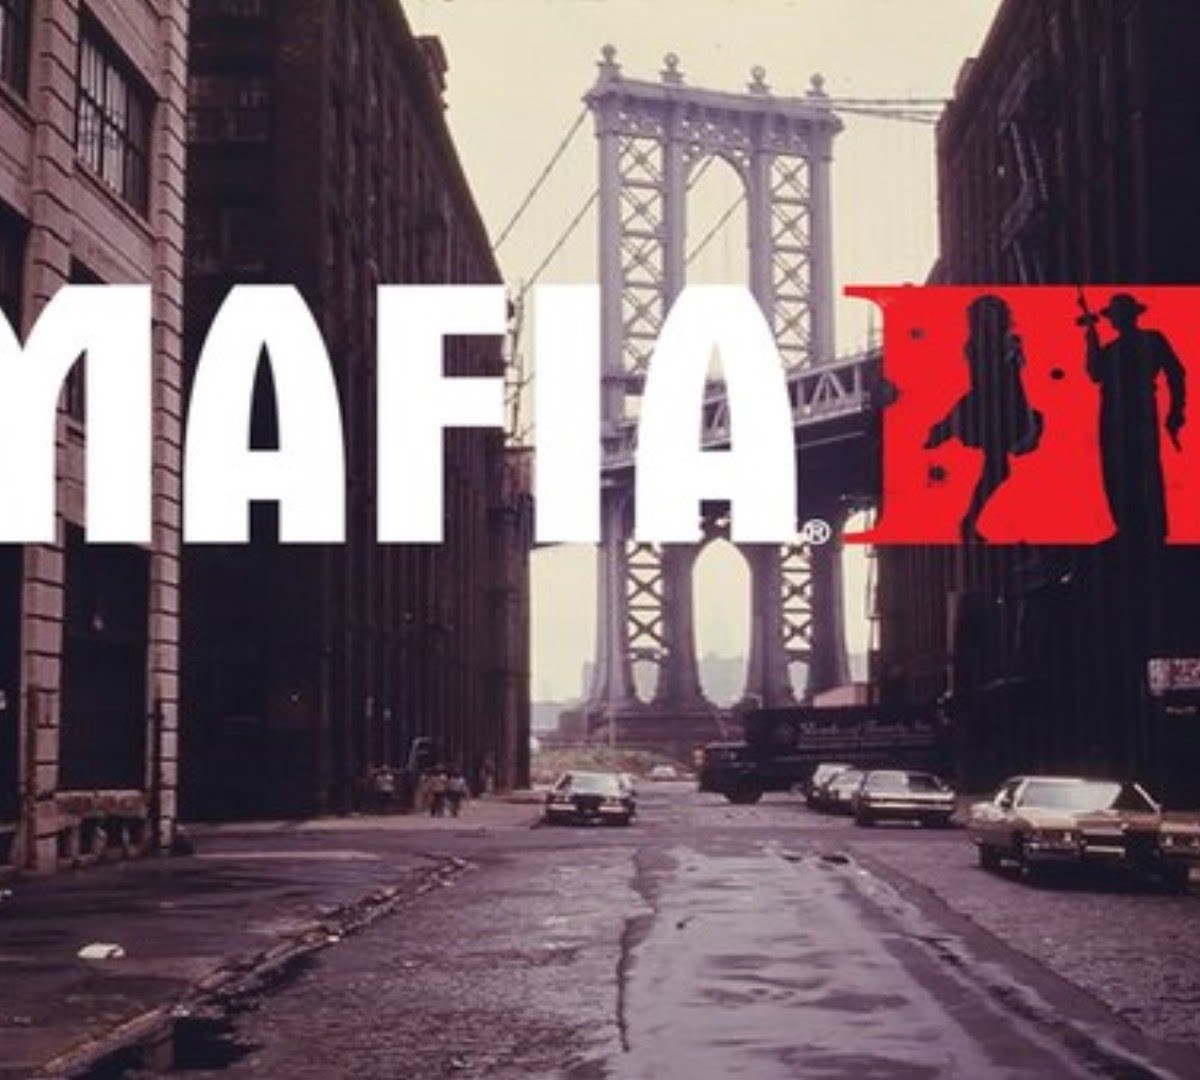 Mafia III: Requisitos minimos y recomendados para PC